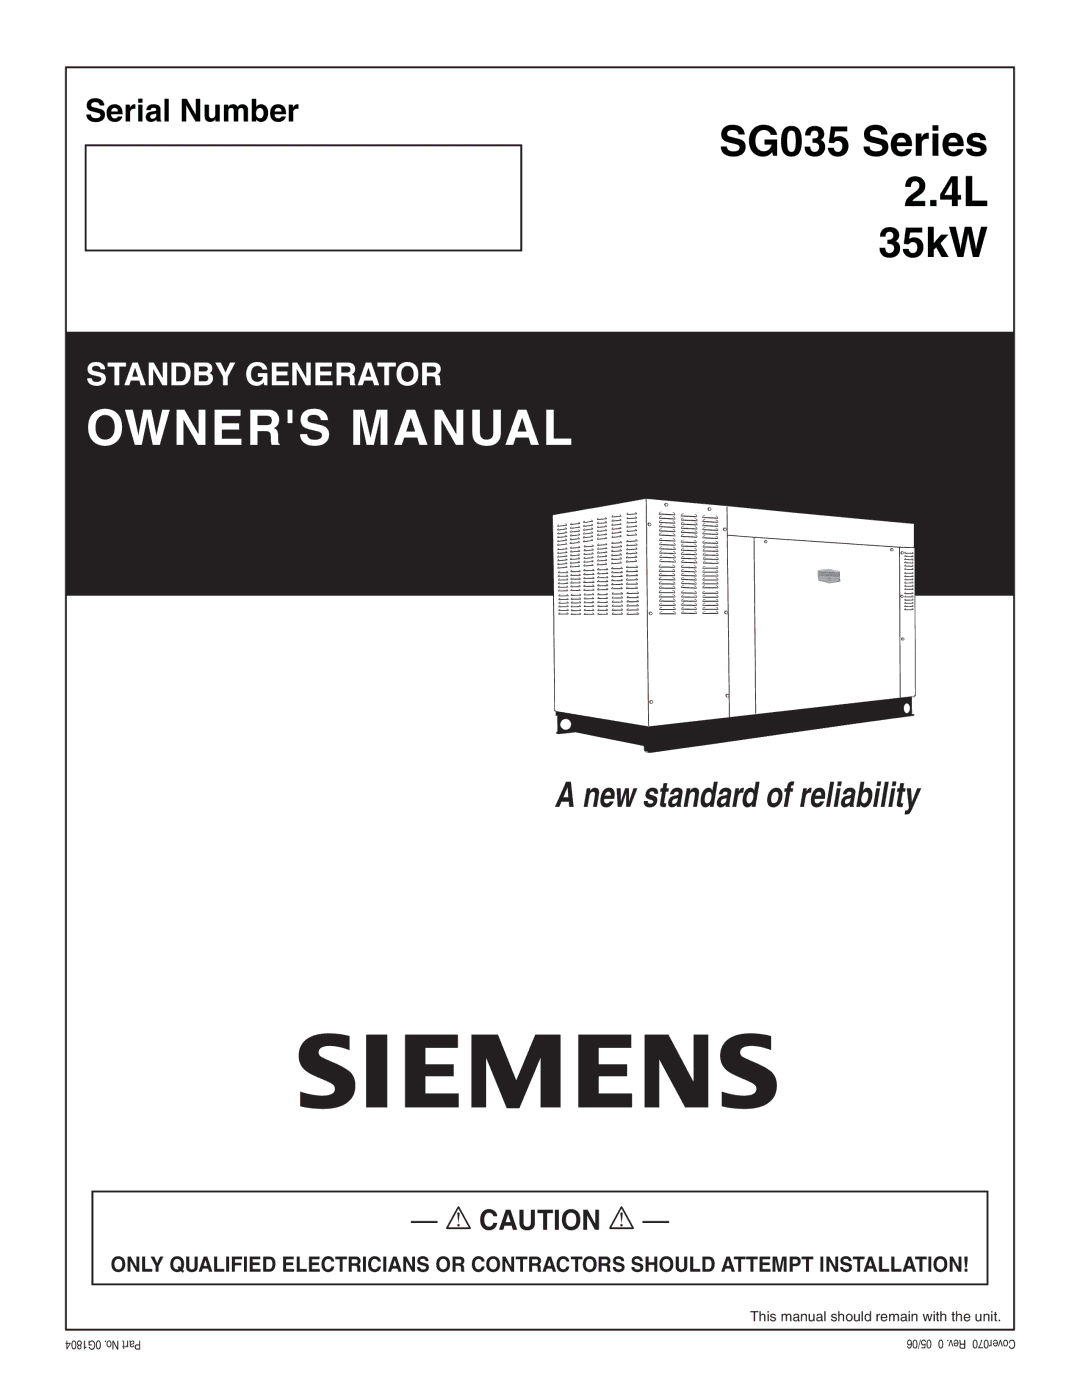 Siemens owner manual SG035 Series 2.4L 35kW 